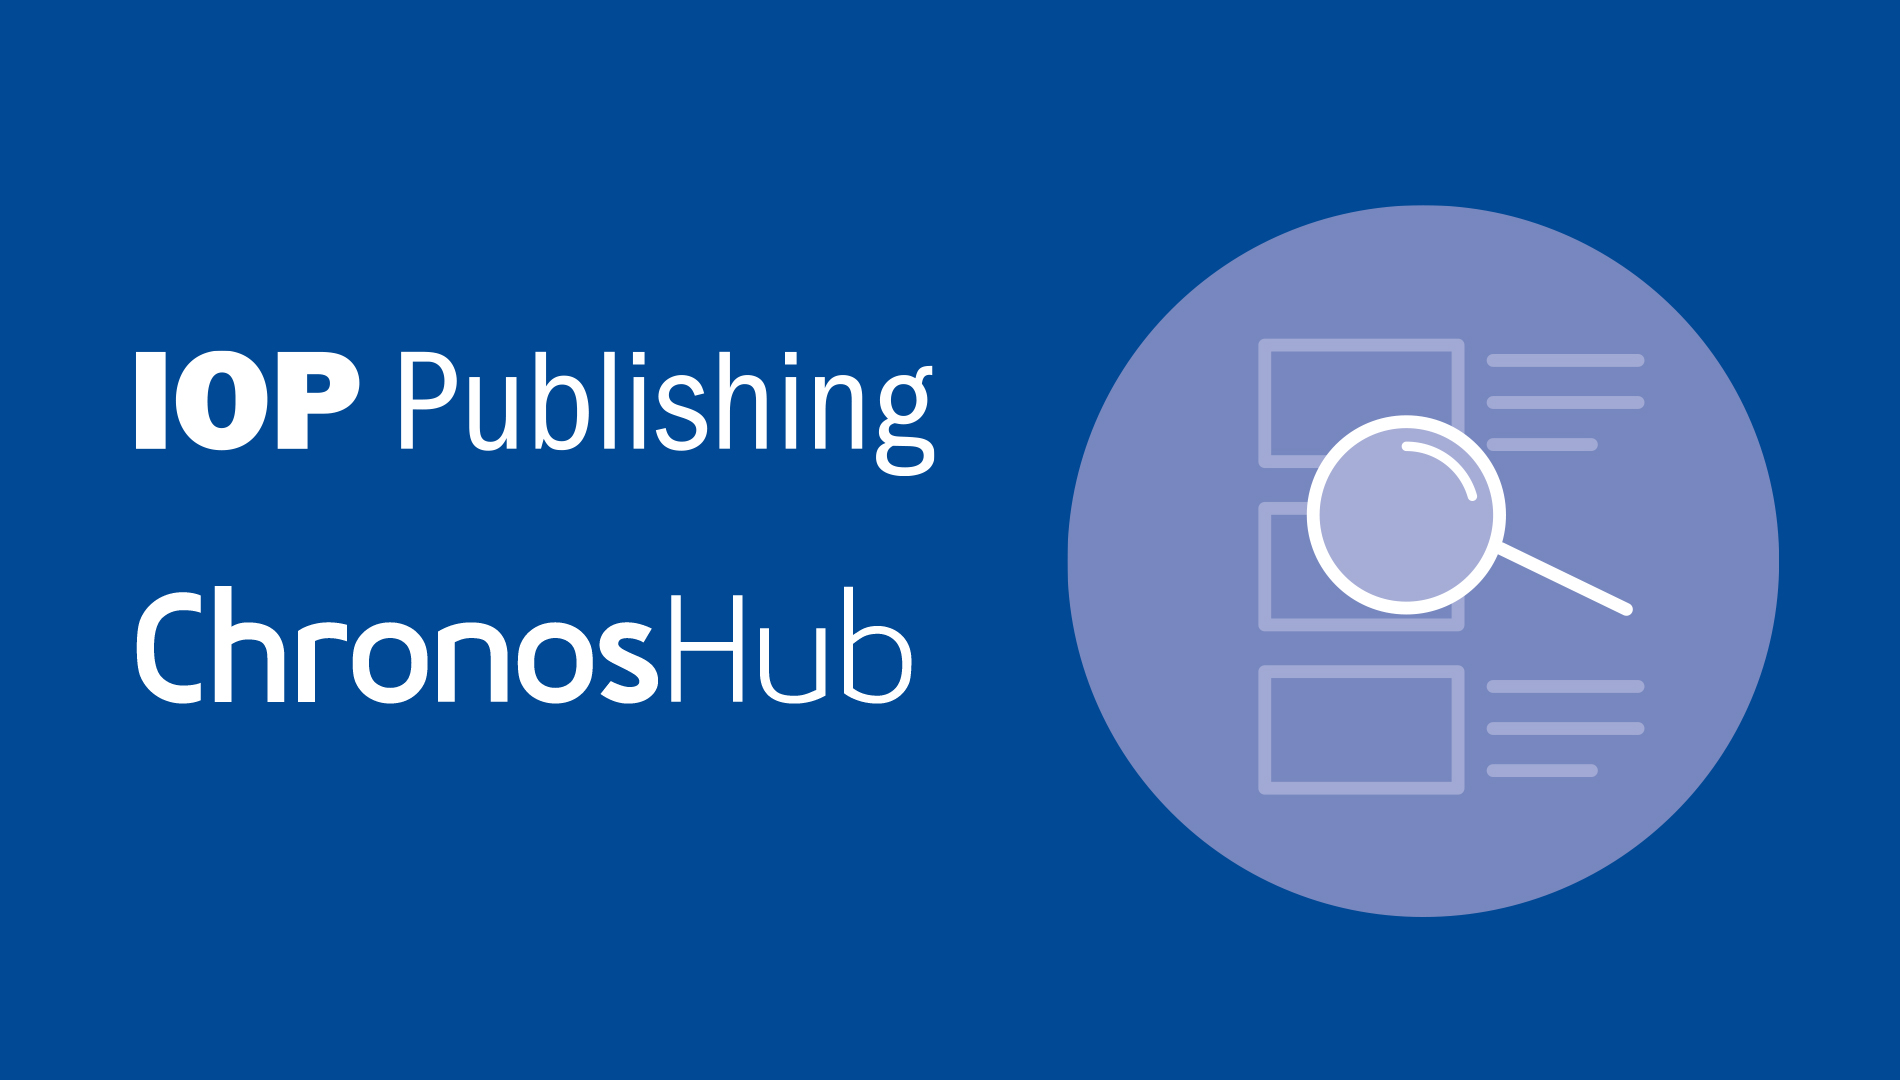 IOP Publishing partners with ChronosHub to simplify OA publishing - IOP  Publishing